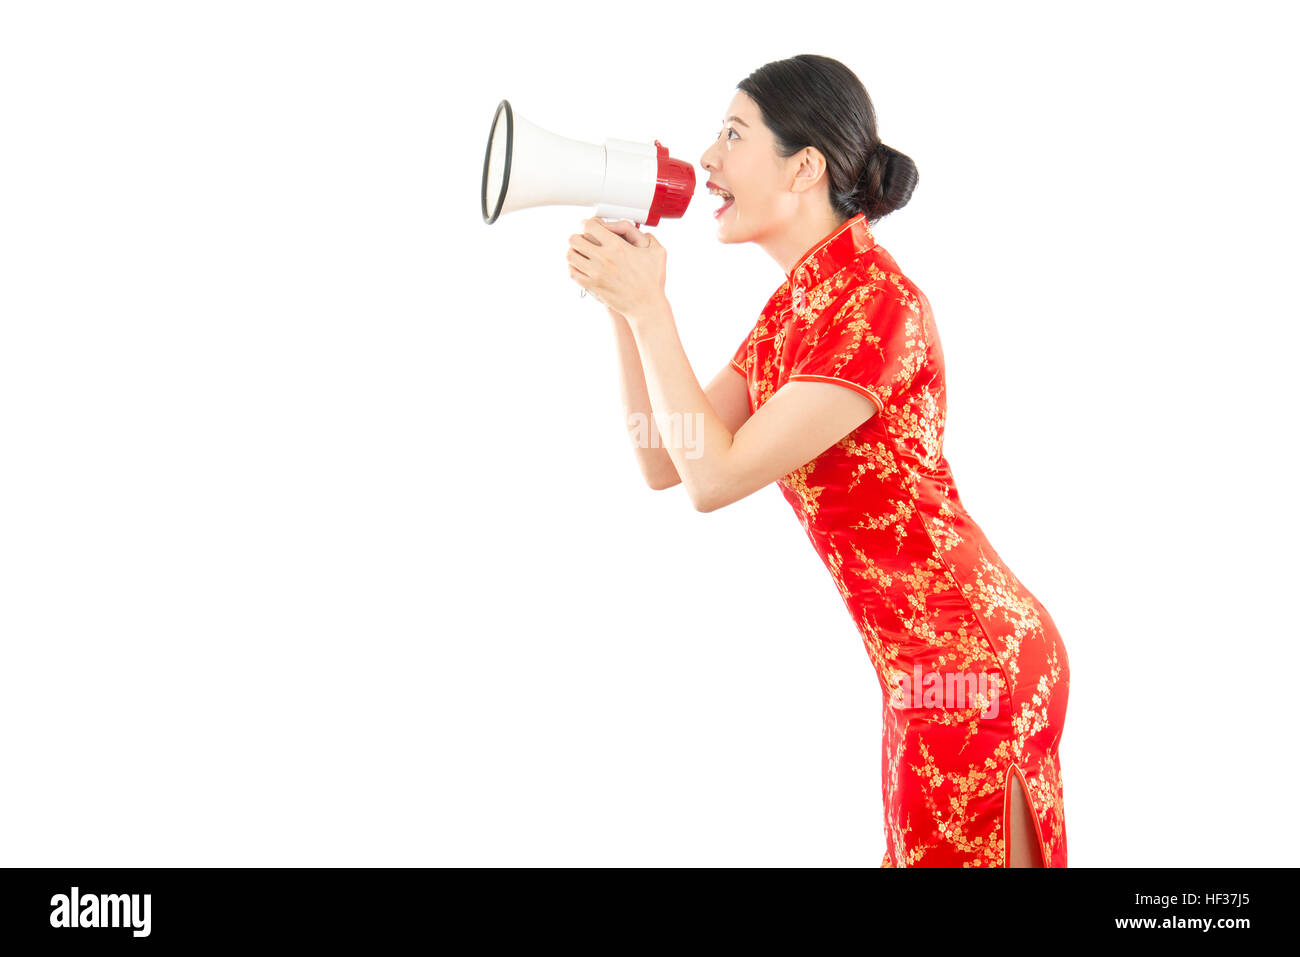 Chinesisches Neujahr-Konzept von hübschen Mädchen halten Megaphon schreien für den Aufruf jeder einkaufen. isoliert auf weißem Hintergrund. gemischte asiatische Rennmodus Stockfoto